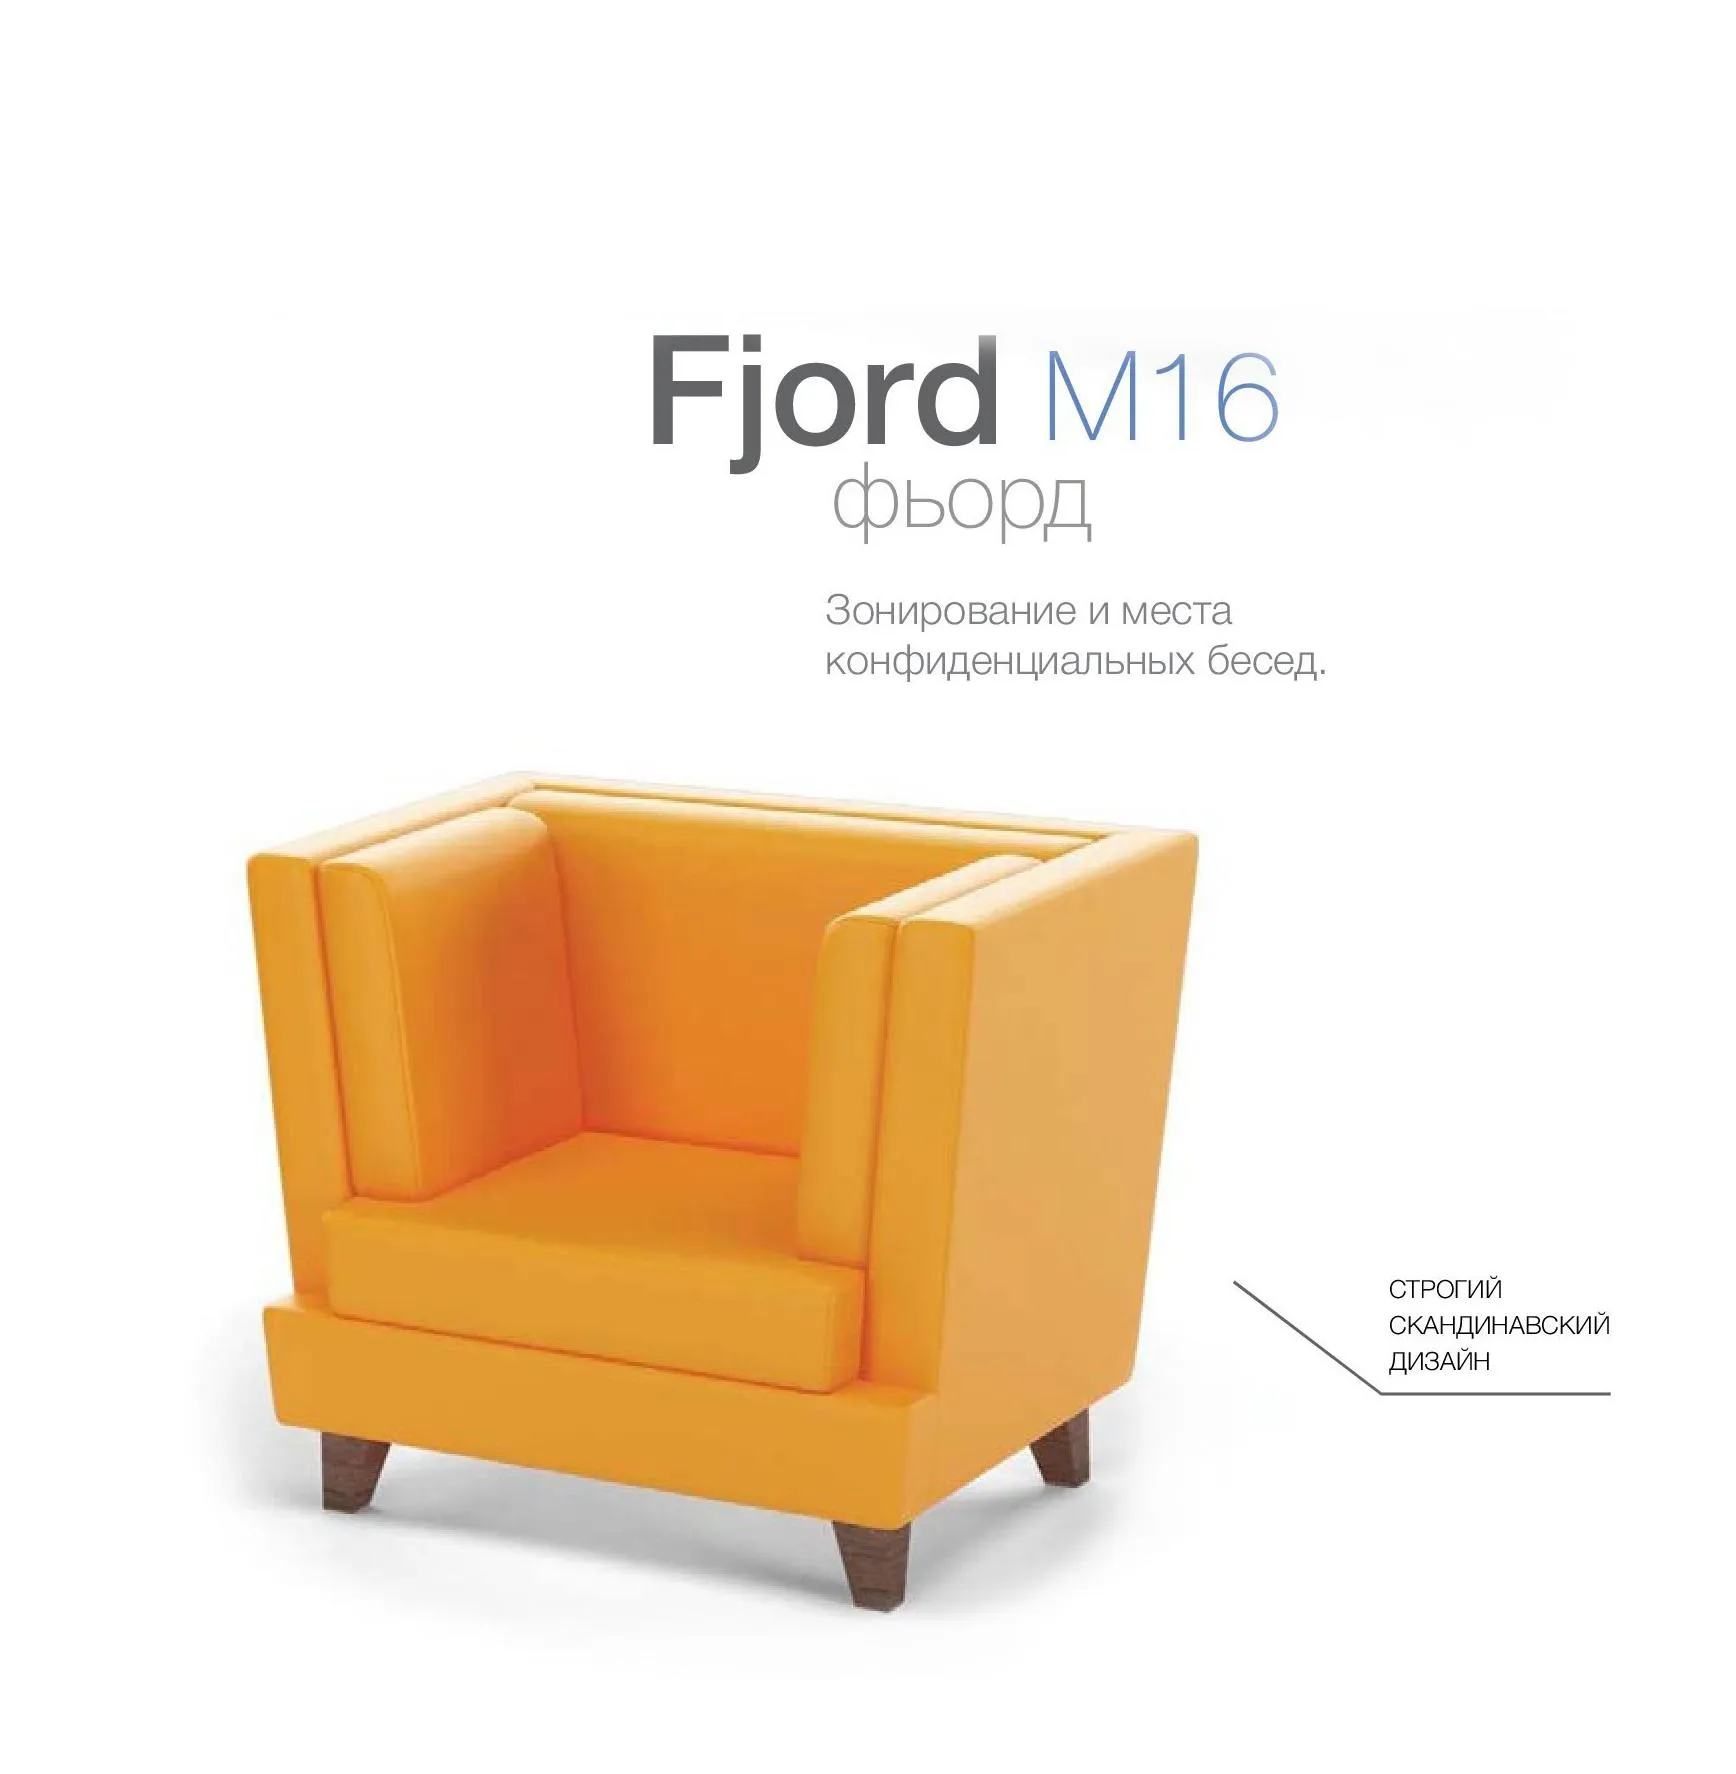 Модульный диван для посетителей toForm М16 Fjord